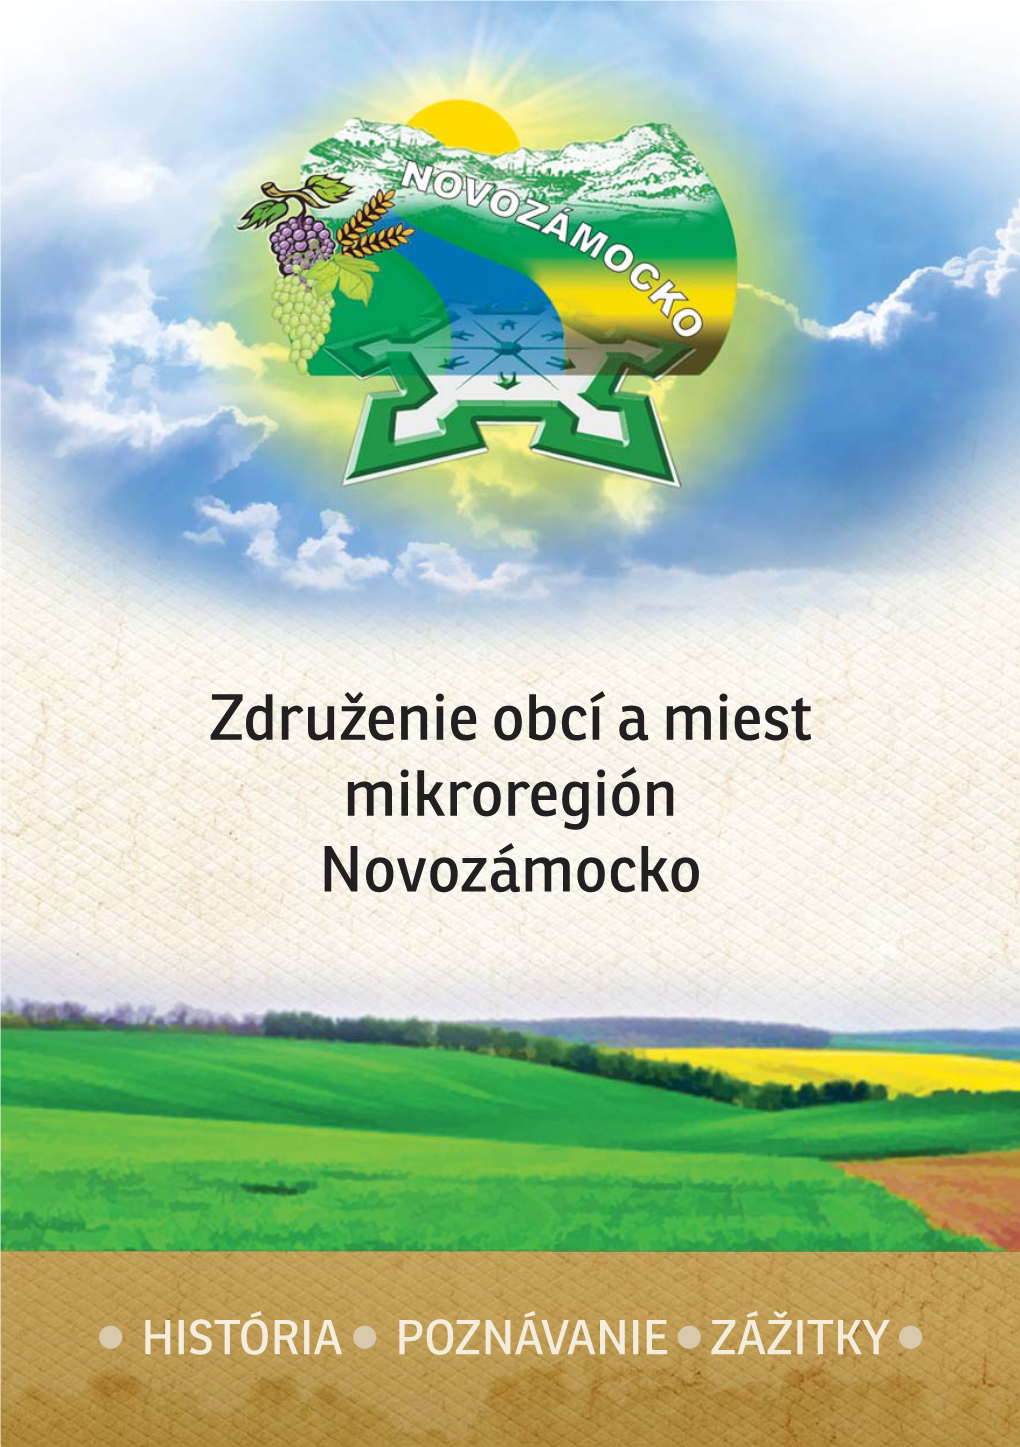 Združenie Obcí a Miest Mikroregión Novozámocko